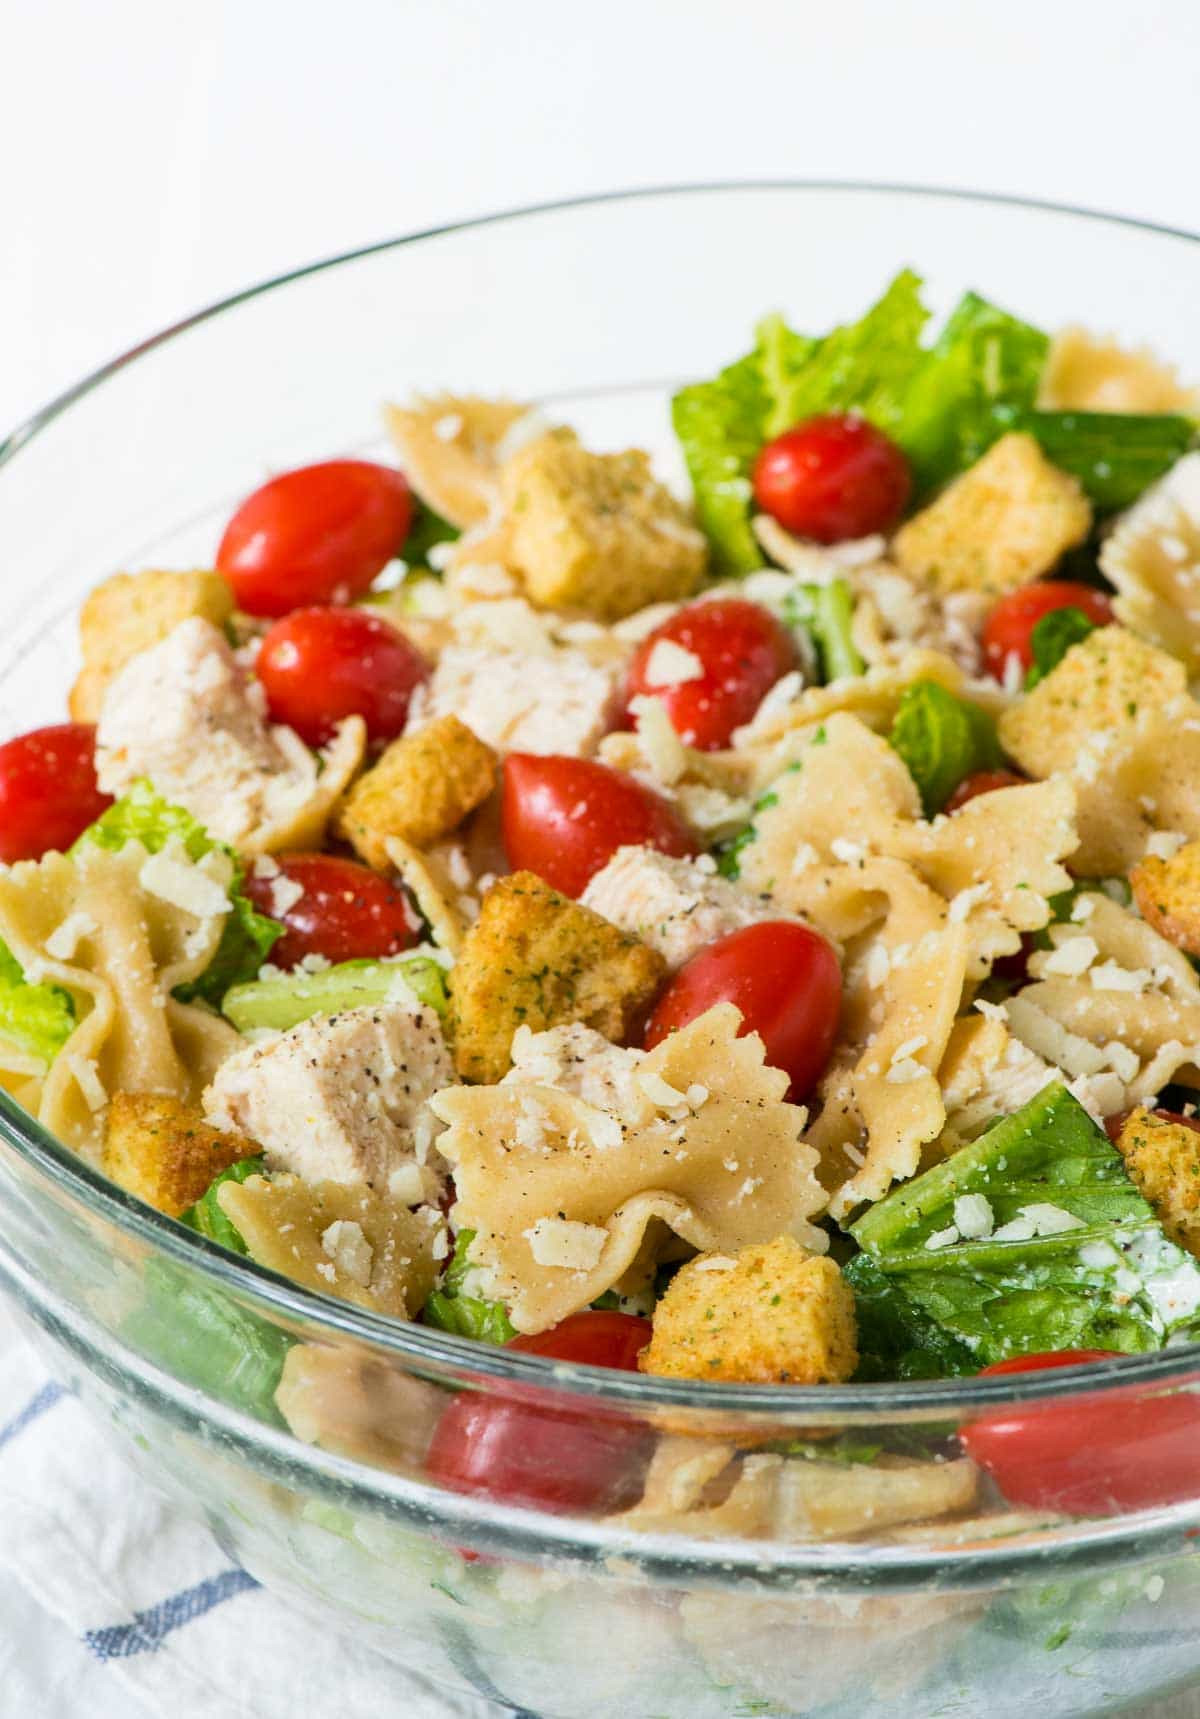 Healthy Pasta Salad With Chicken
 Chicken Caesar Pasta Salad